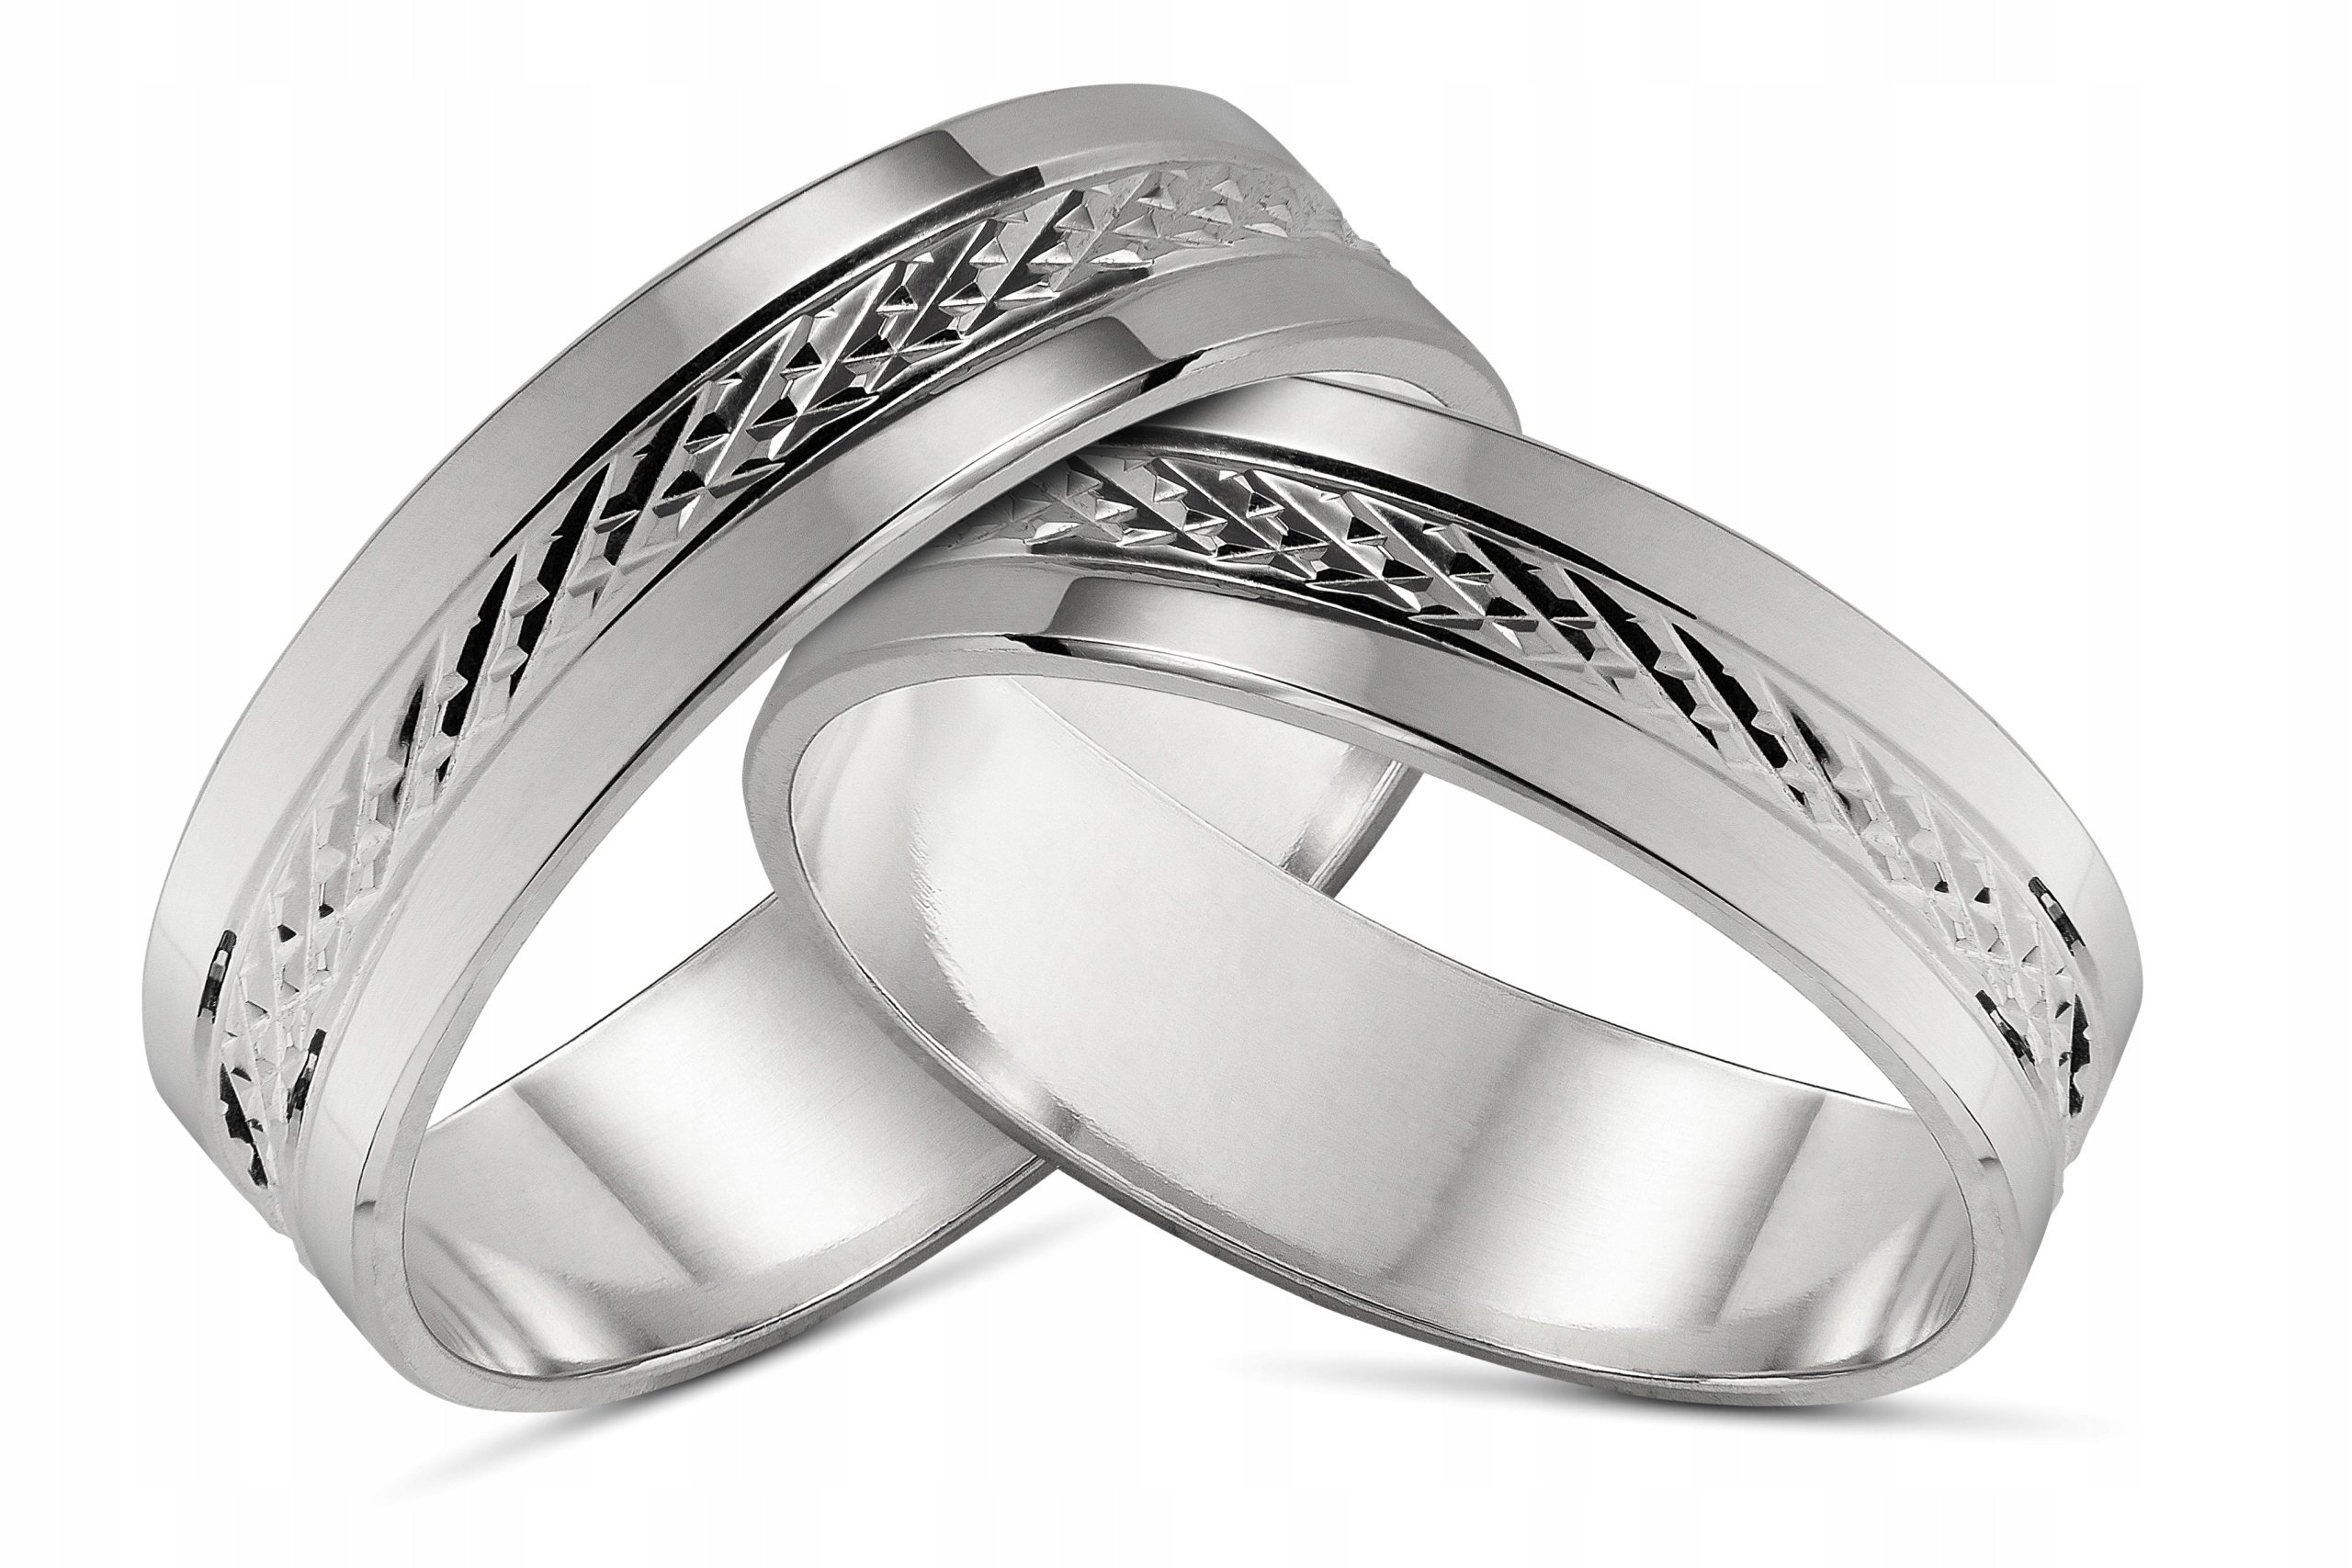 Обручальное кольцо серебро мужское. Парные кольца SEREBRO 925. SEREBRO 925 Kolca обручальные. Парные кольца Соколов серебро.